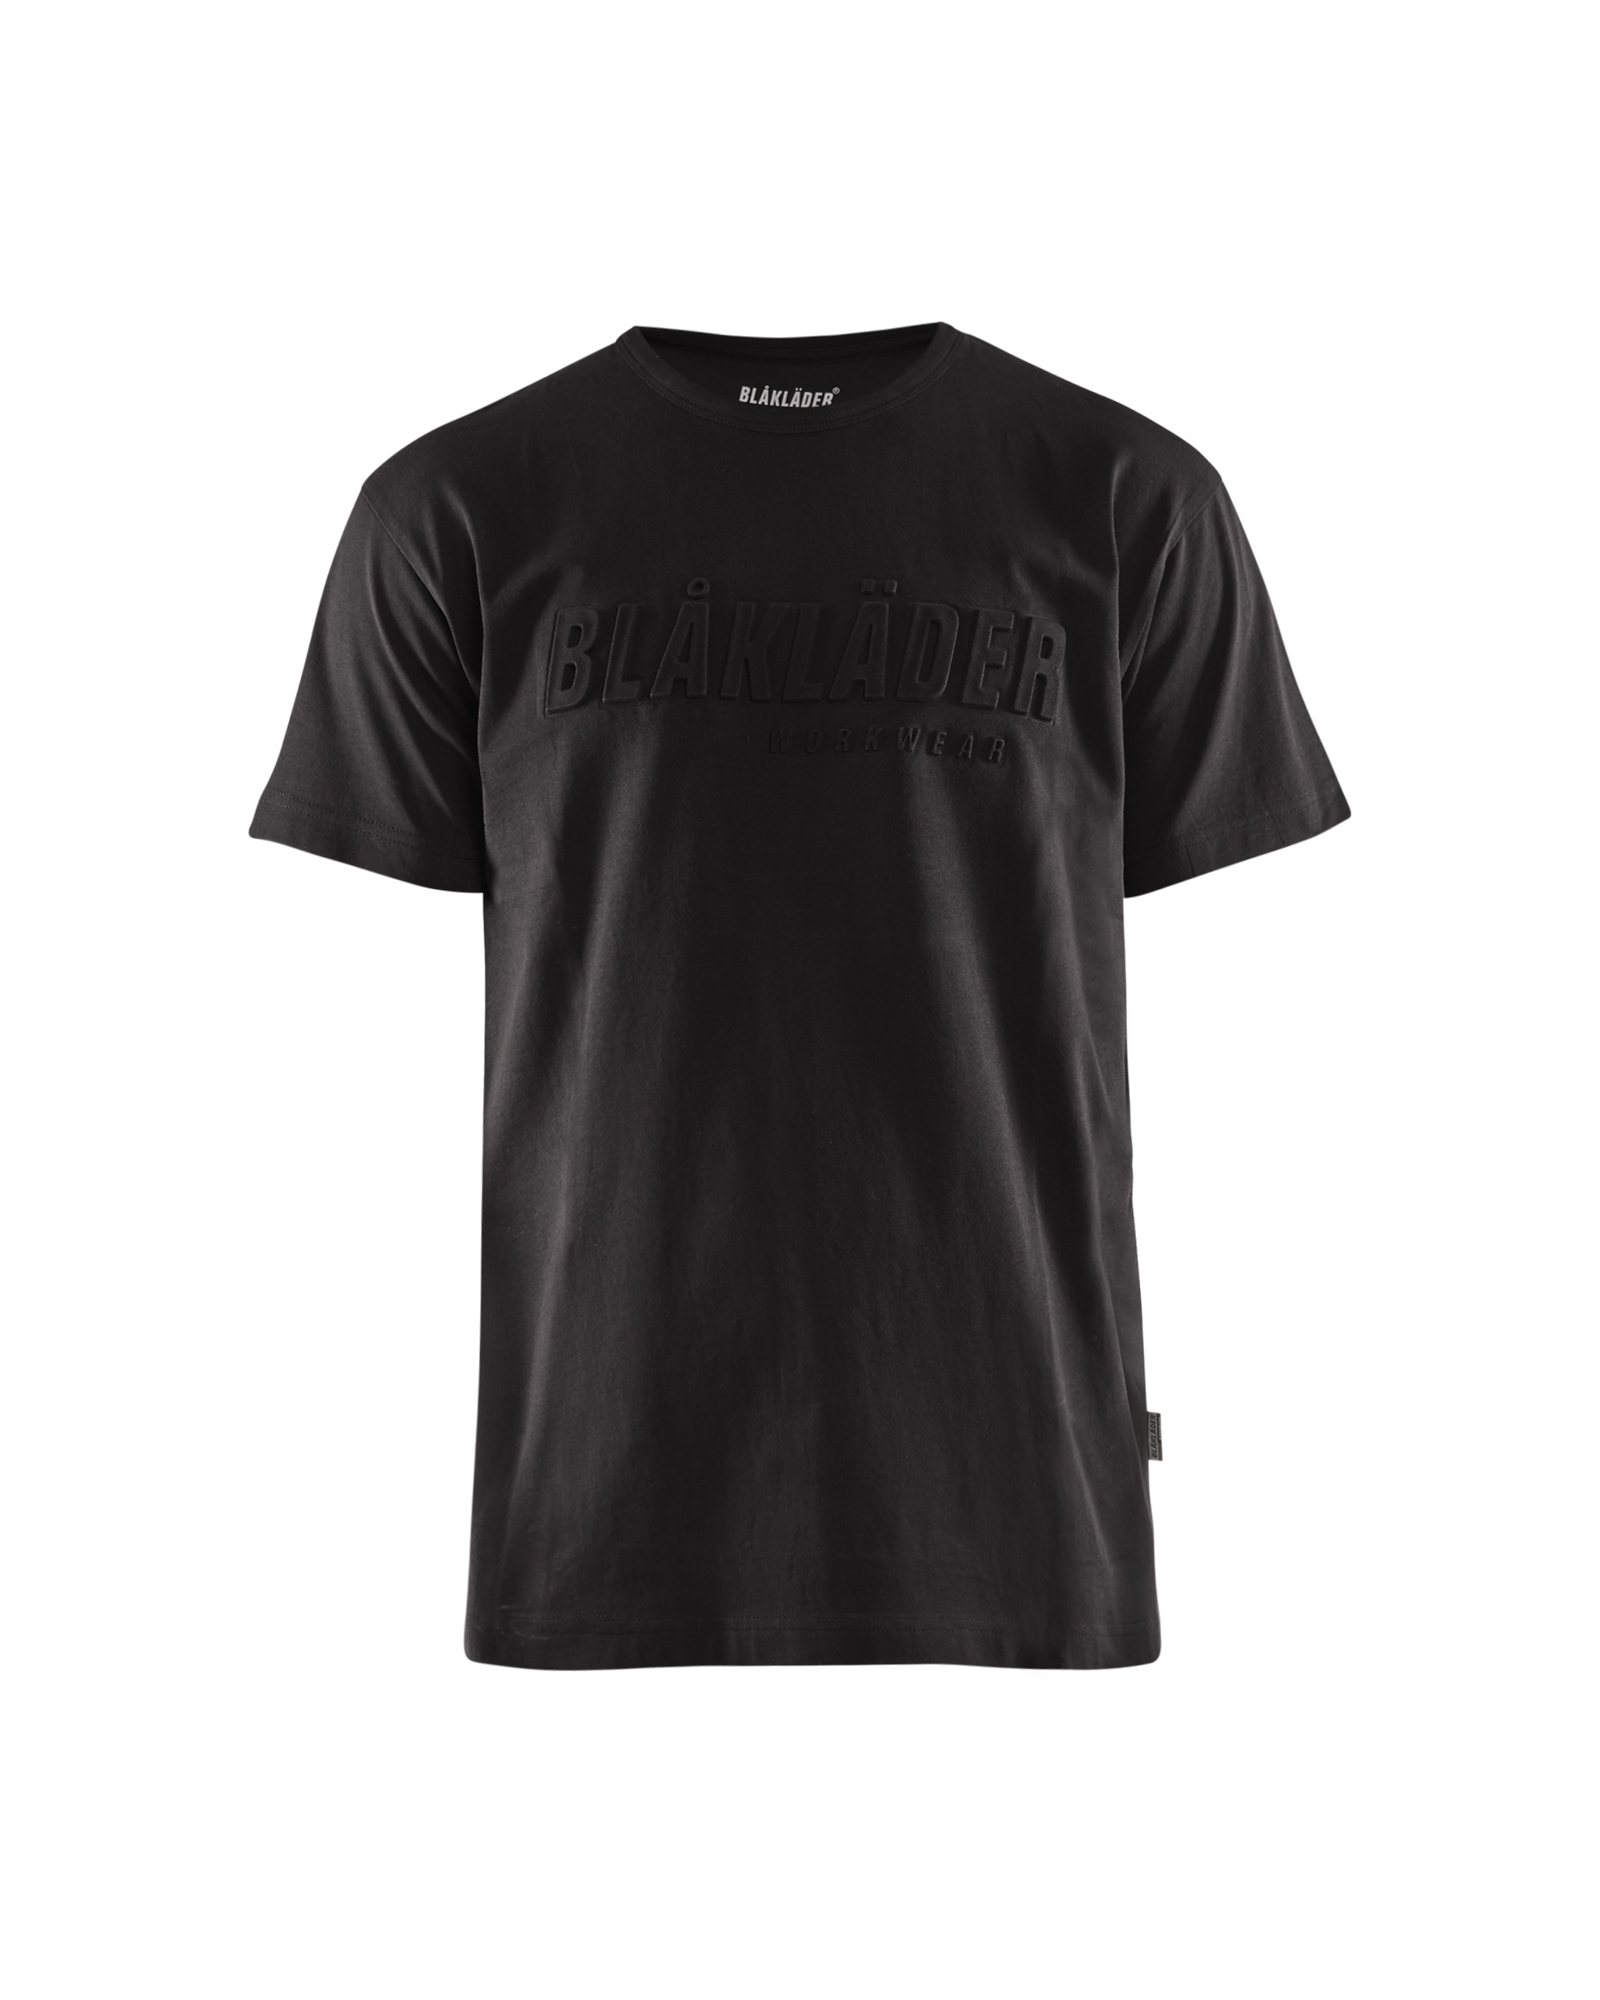 T-shirt noir Blaklader 3531 imprimé 3D - 353110429900